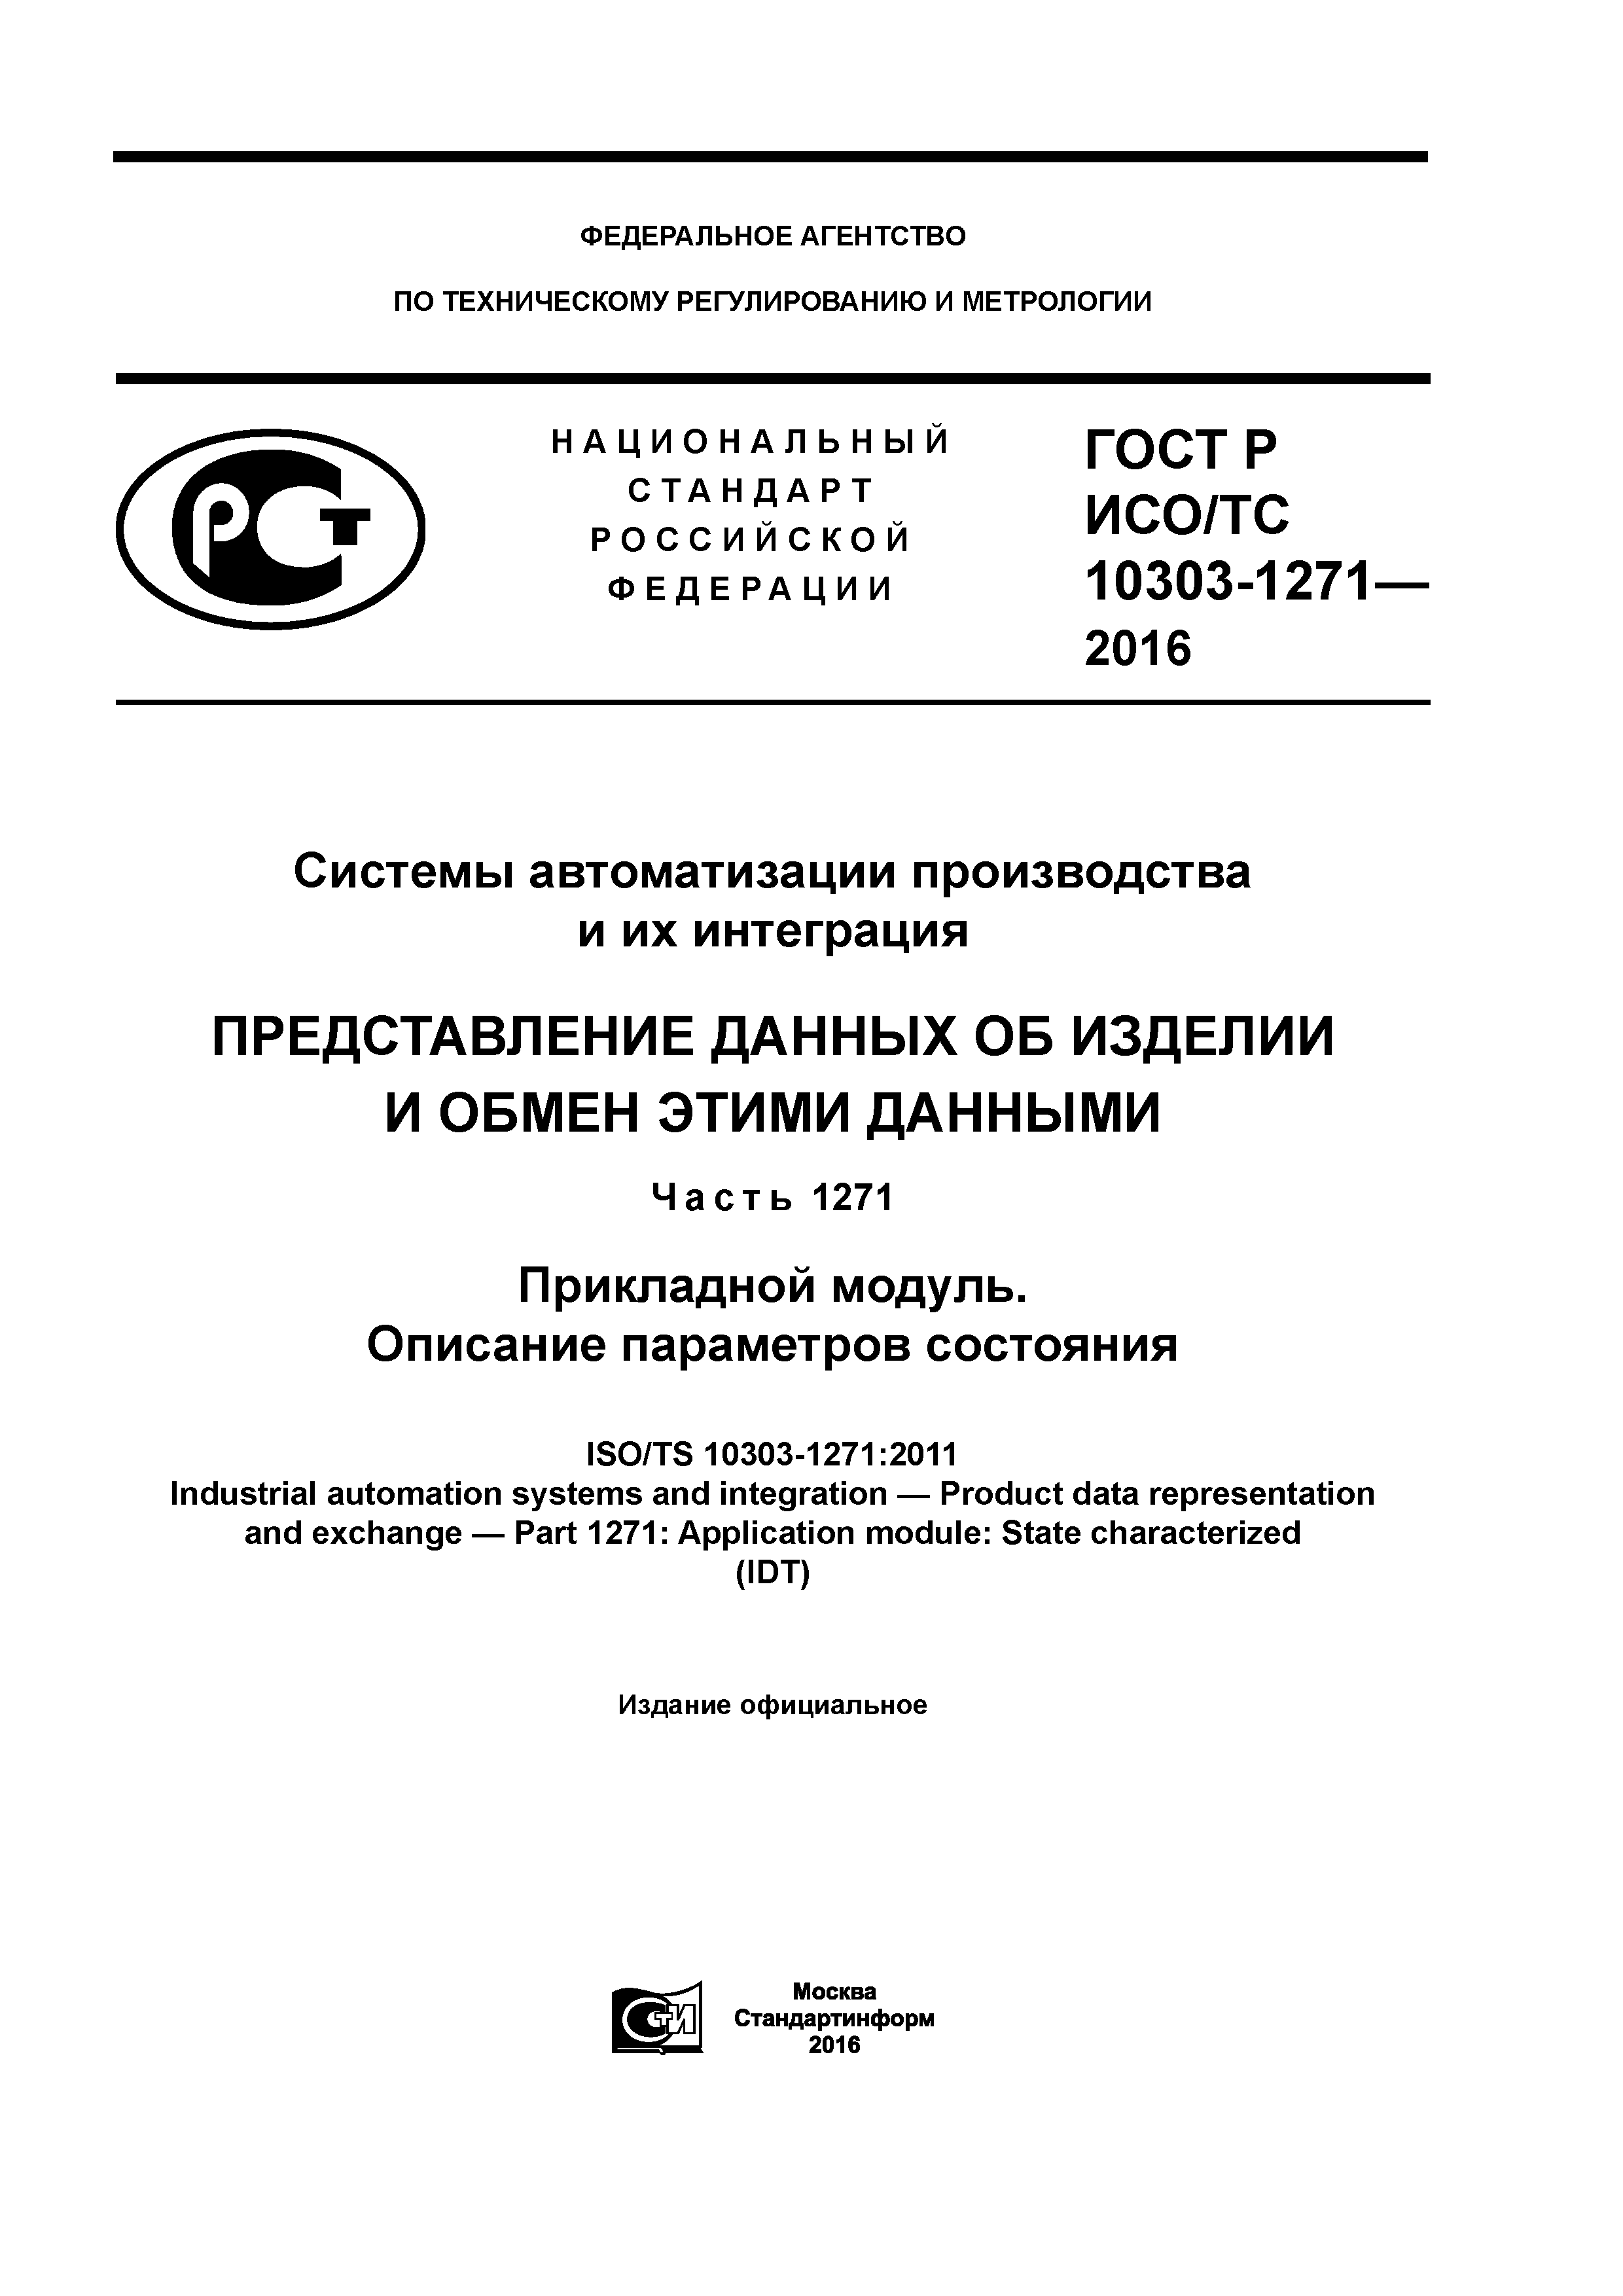 ГОСТ Р ИСО/ТС 10303-1271-2016